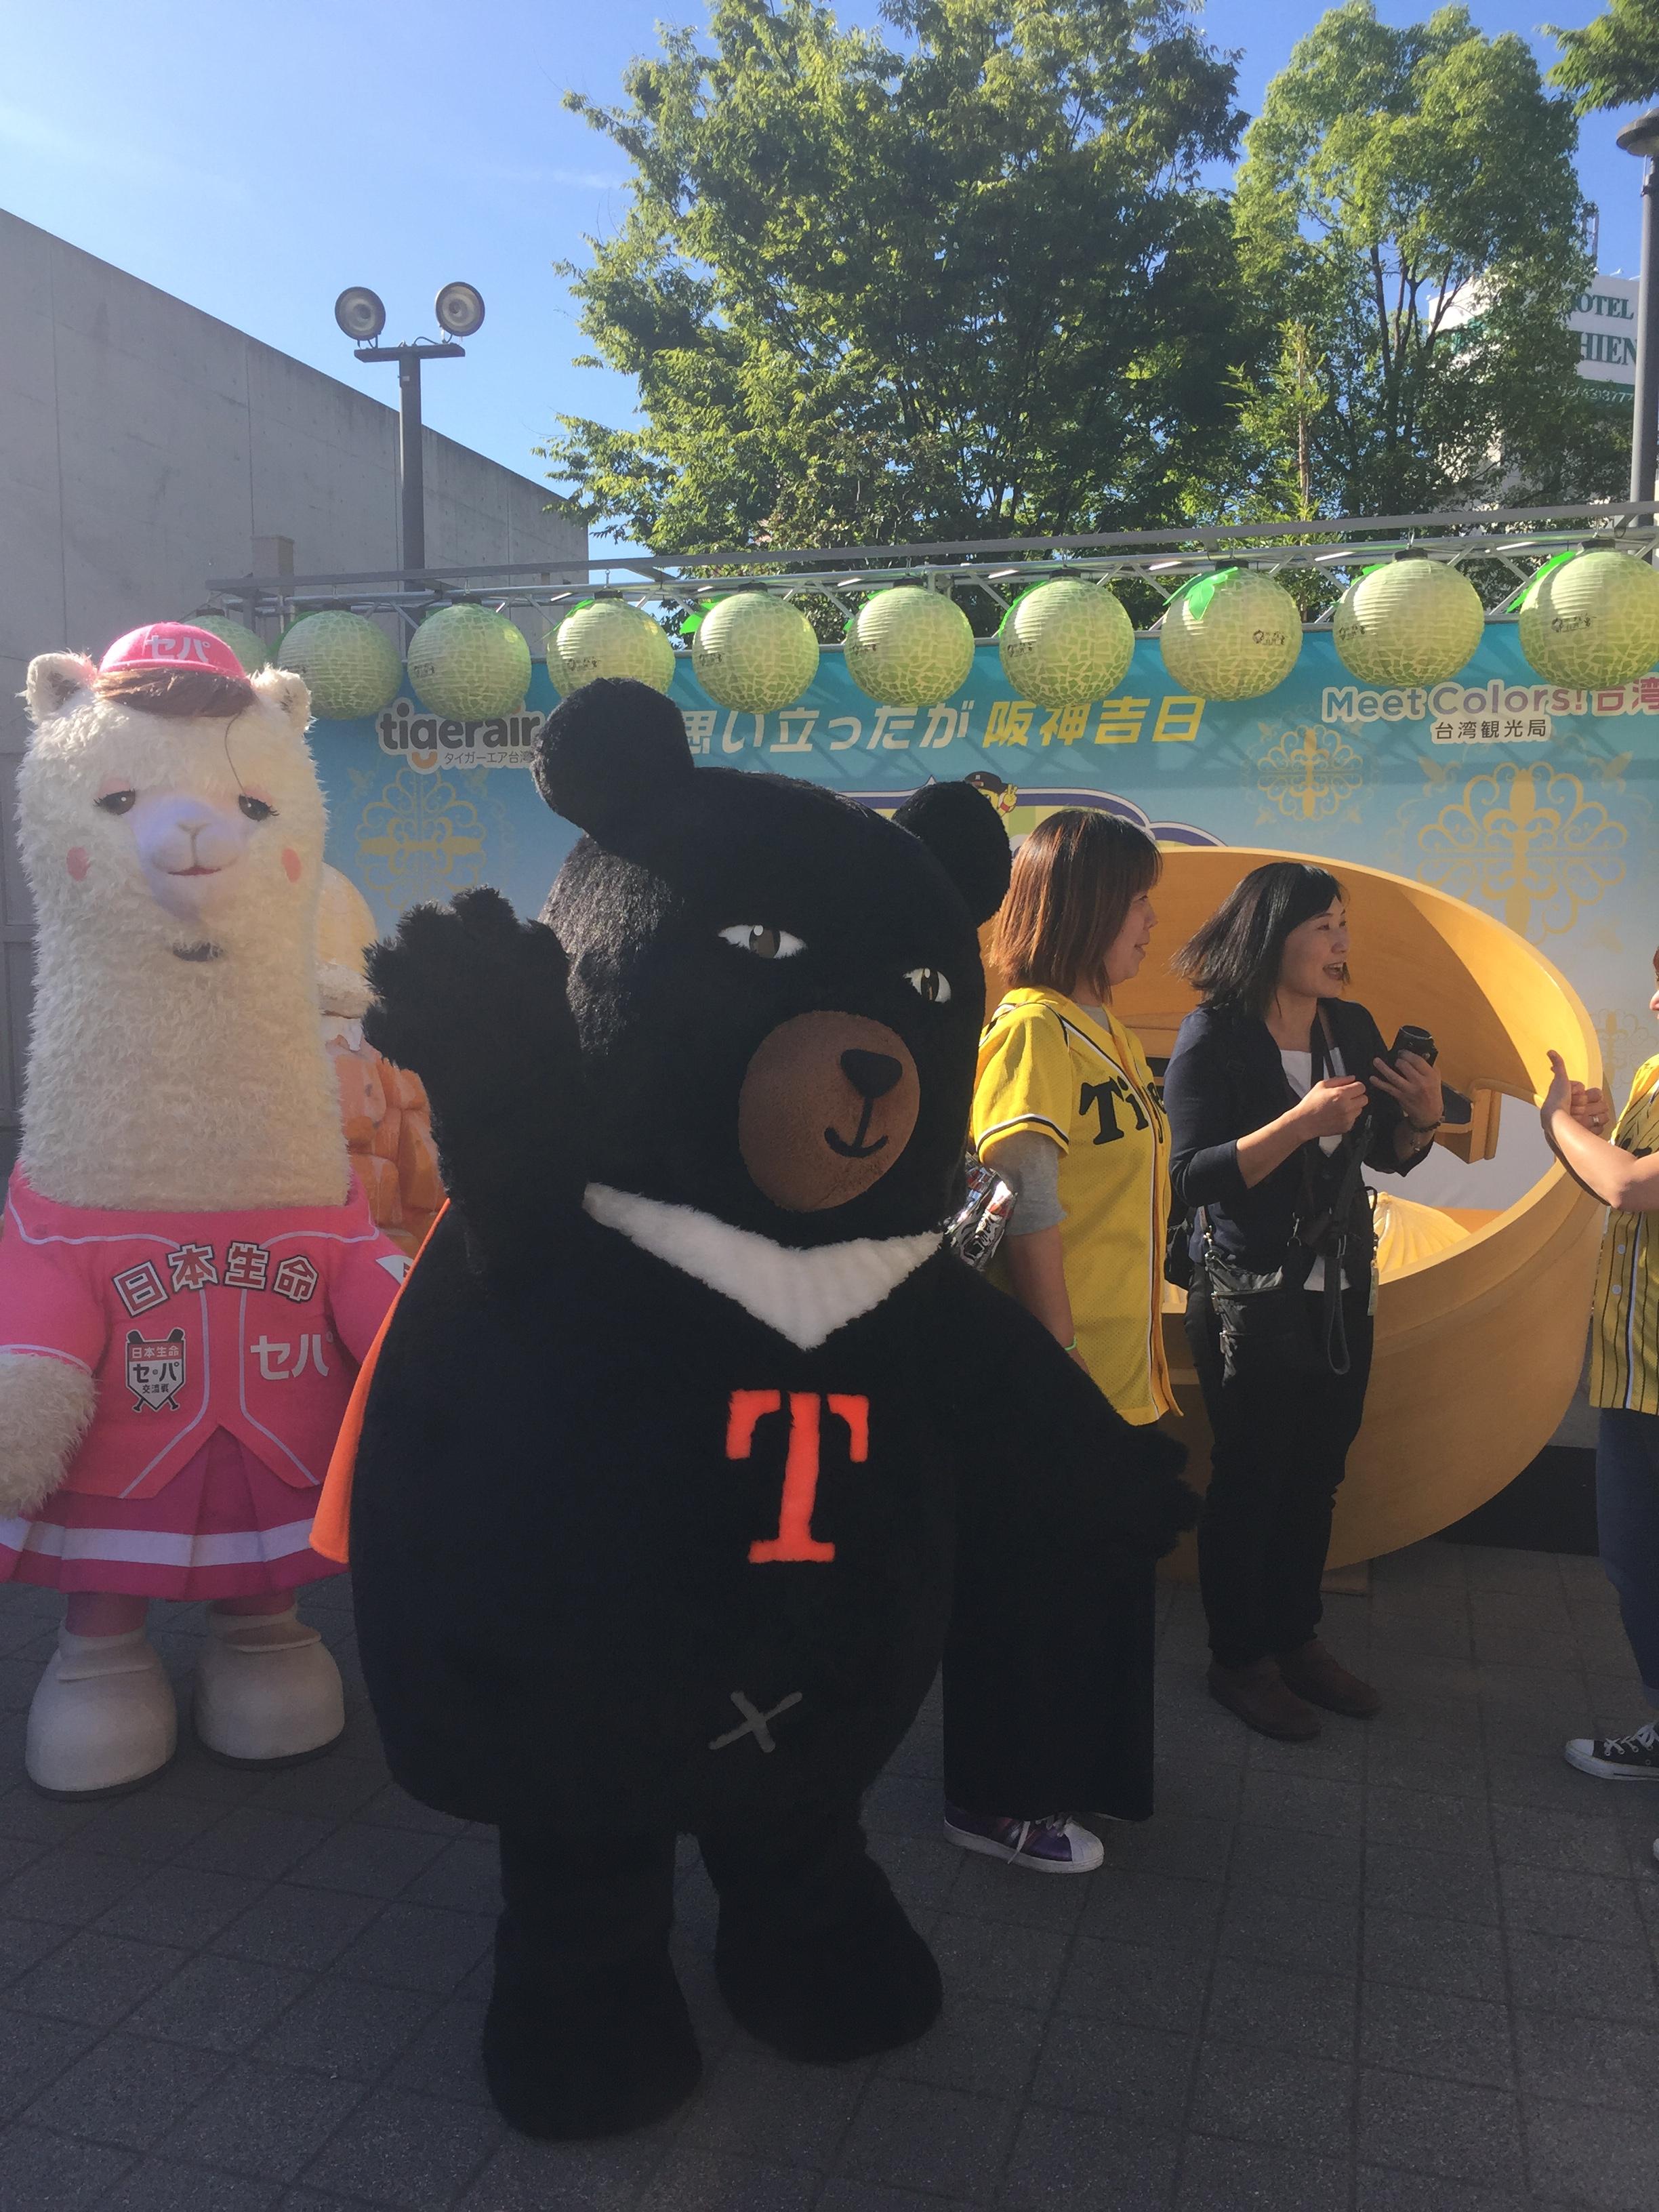 台湾観光協会大阪事務所とTigerair 台湾が協力の下、阪神甲子園球場にて6月14・15日に「台湾デー」が開催された。